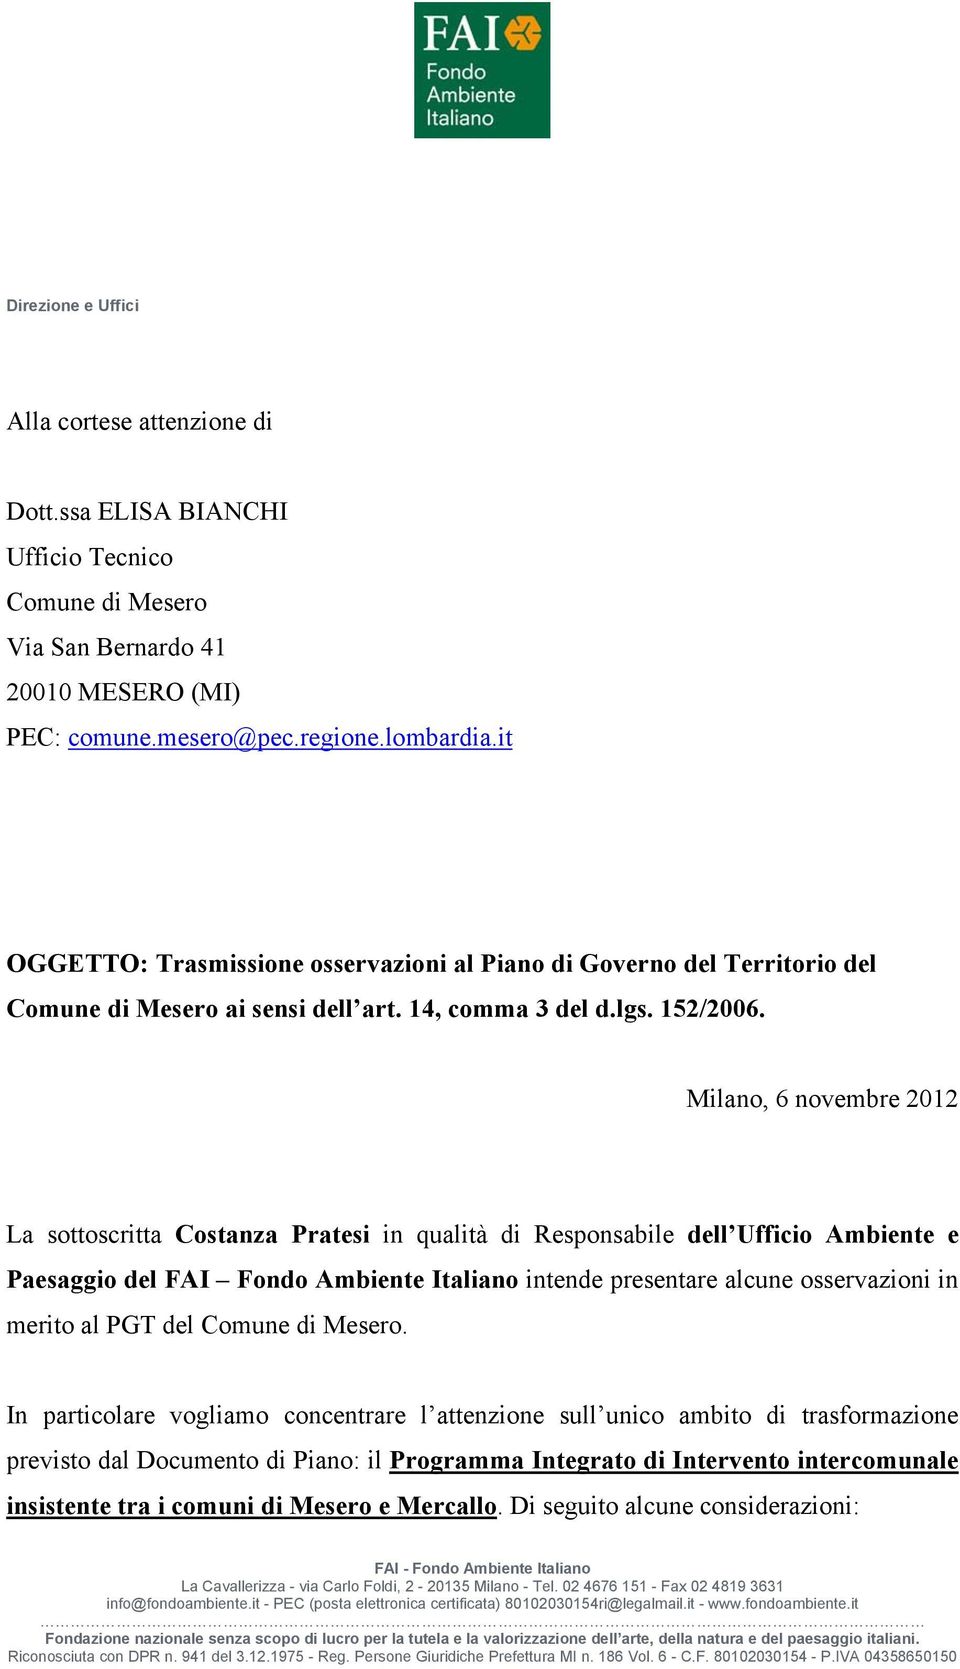 Milano, 6 novembre 2012 La sottoscritta Costanza Pratesi in qualità di Responsabile dell Ufficio Ambiente e Paesaggio del FAI Fondo Ambiente Italiano intende presentare alcune osservazioni in merito